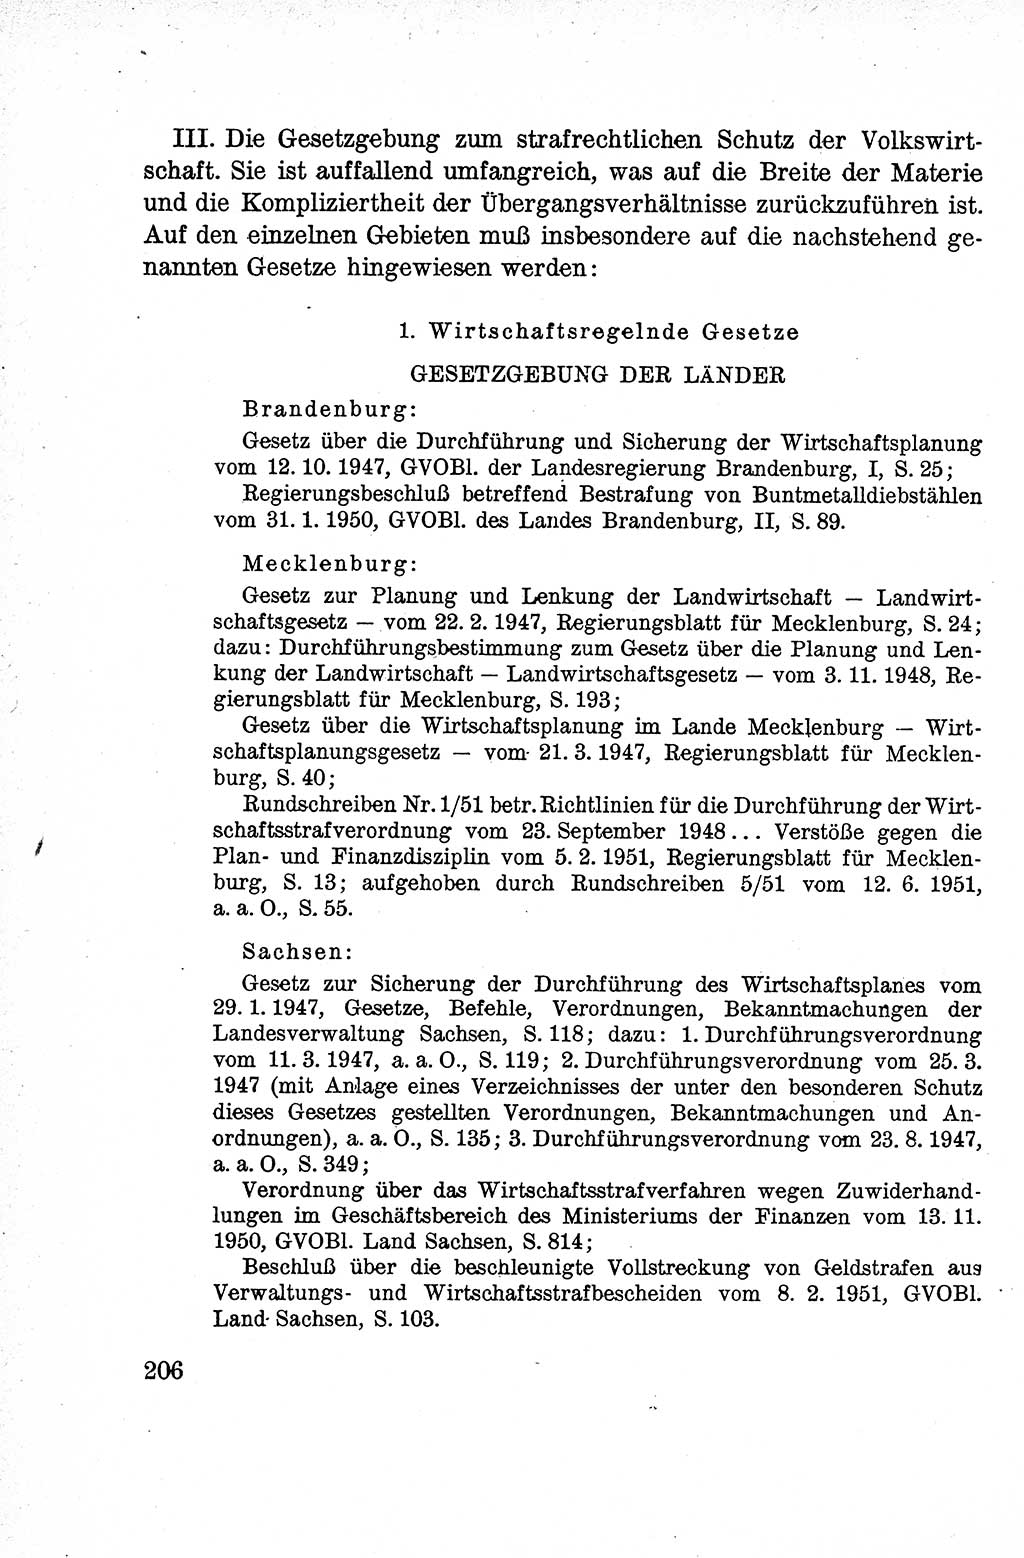 Lehrbuch des Strafrechts der Deutschen Demokratischen Republik (DDR), Allgemeiner Teil 1959, Seite 206 (Lb. Strafr. DDR AT 1959, S. 206)